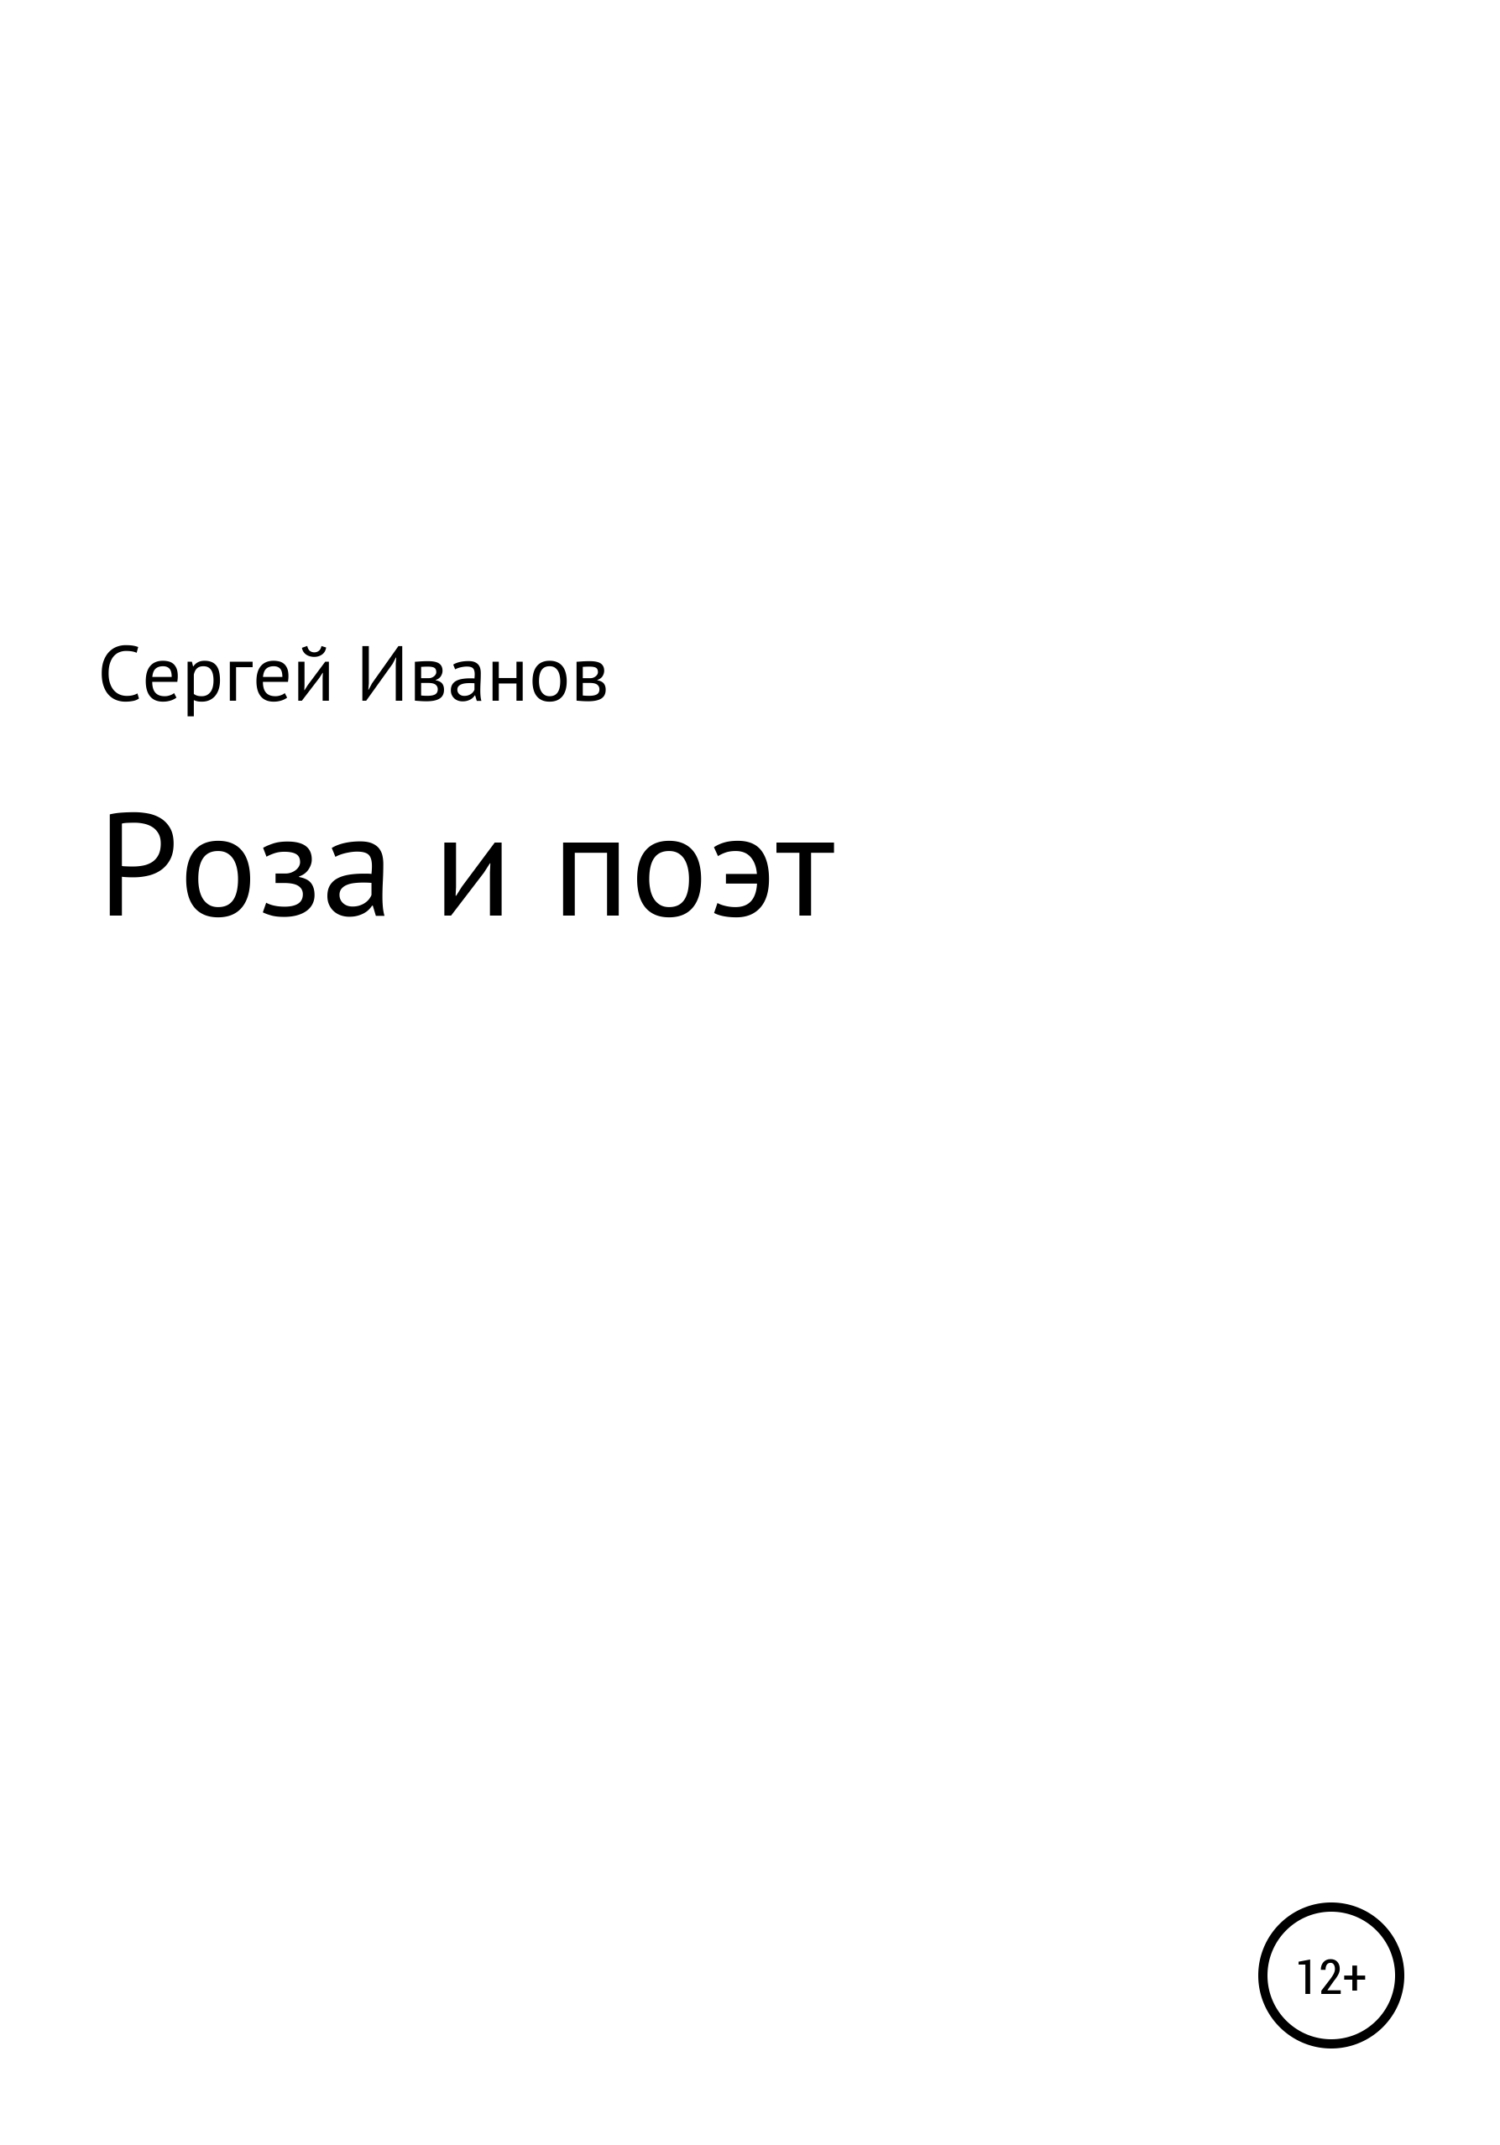 Роза и поэт - Сергей Федорович Иванов